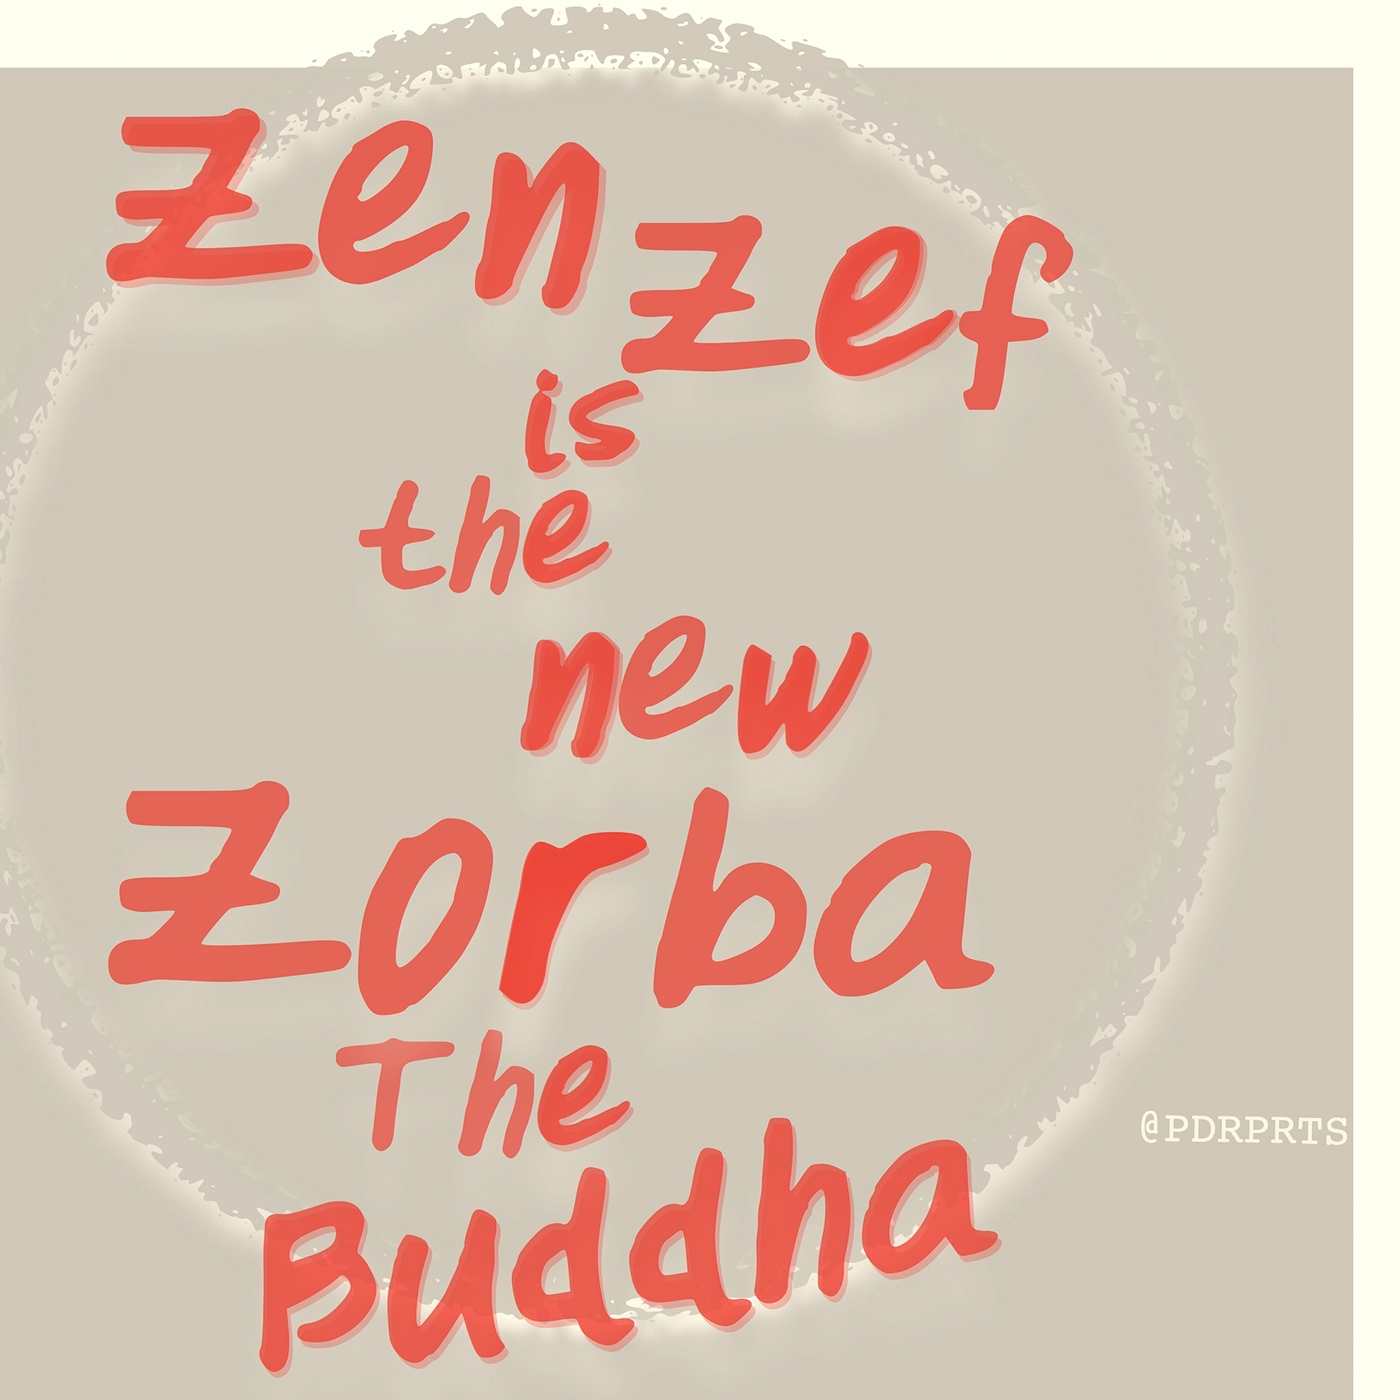 pedroprates zen Zef zenzef Buddha zorba the buddha Zorba osho meditation transcendence